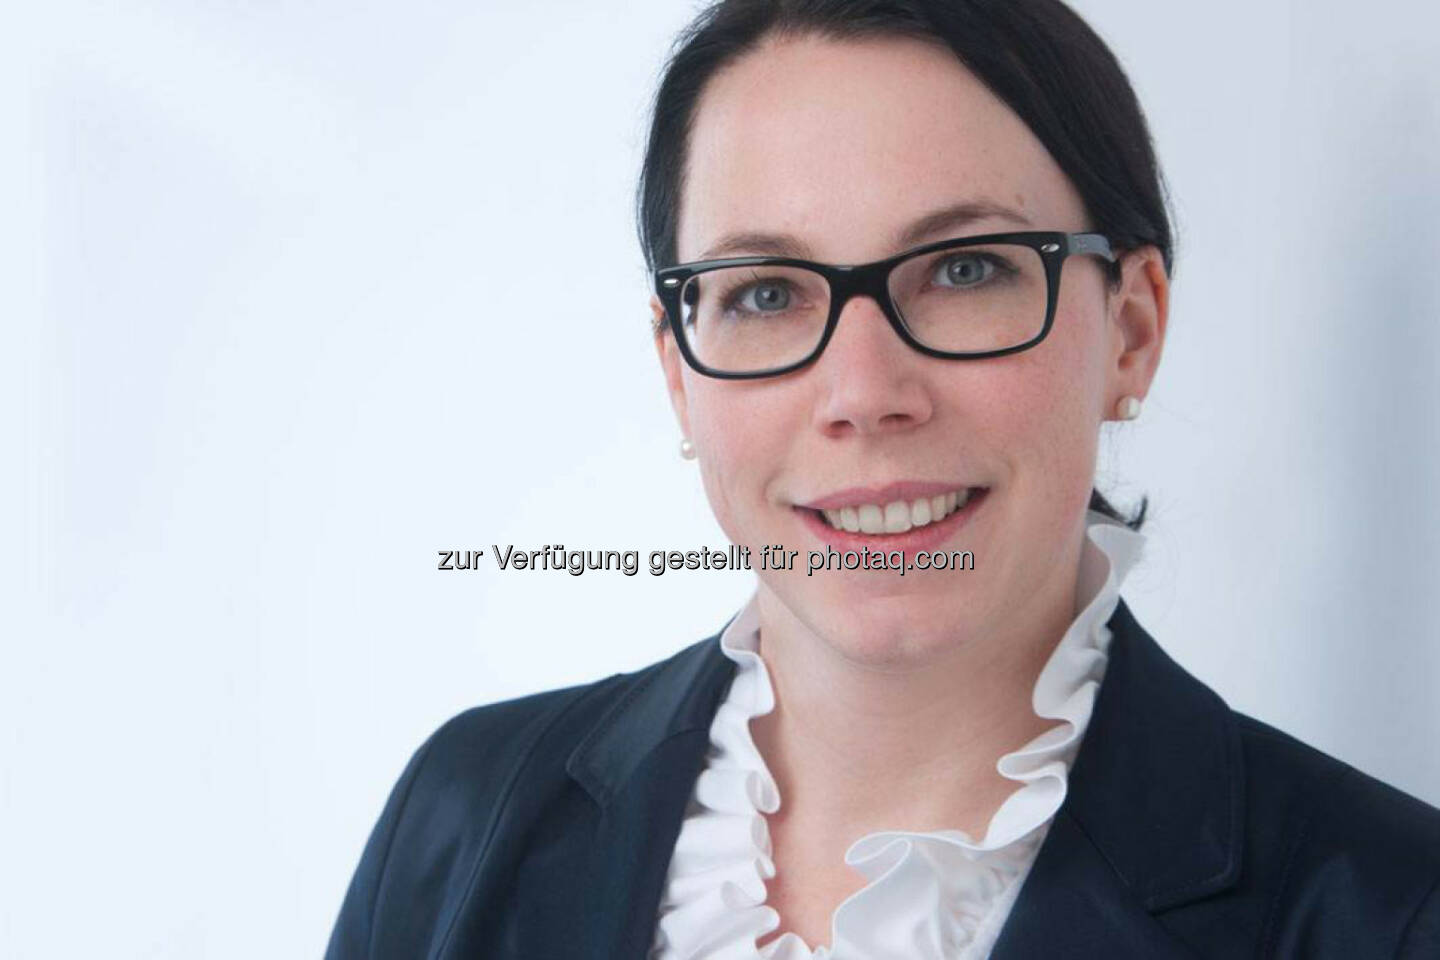 Sandra Dorrer, Geschäftsführung der St. Pöltner Niederlassung der Wirtschaftsprüfungs- und Steuerberatungskanzlei Ecovis Austria